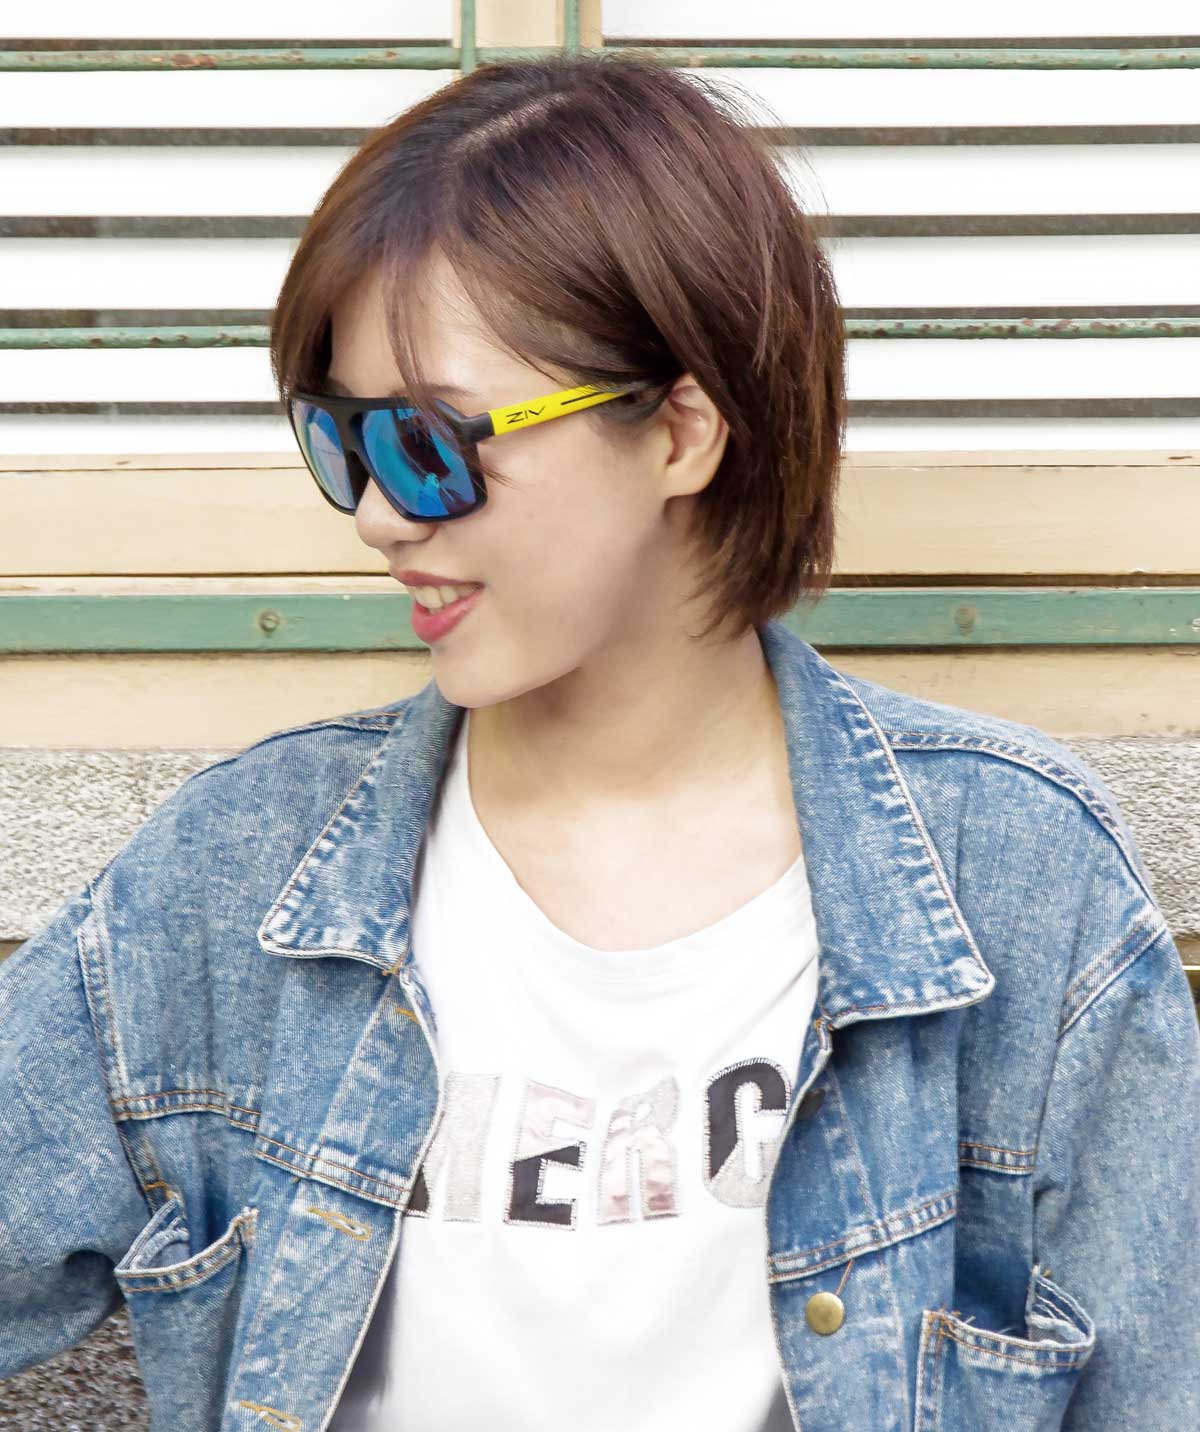 女性配戴ZIV霧黑黃框太陽眼鏡